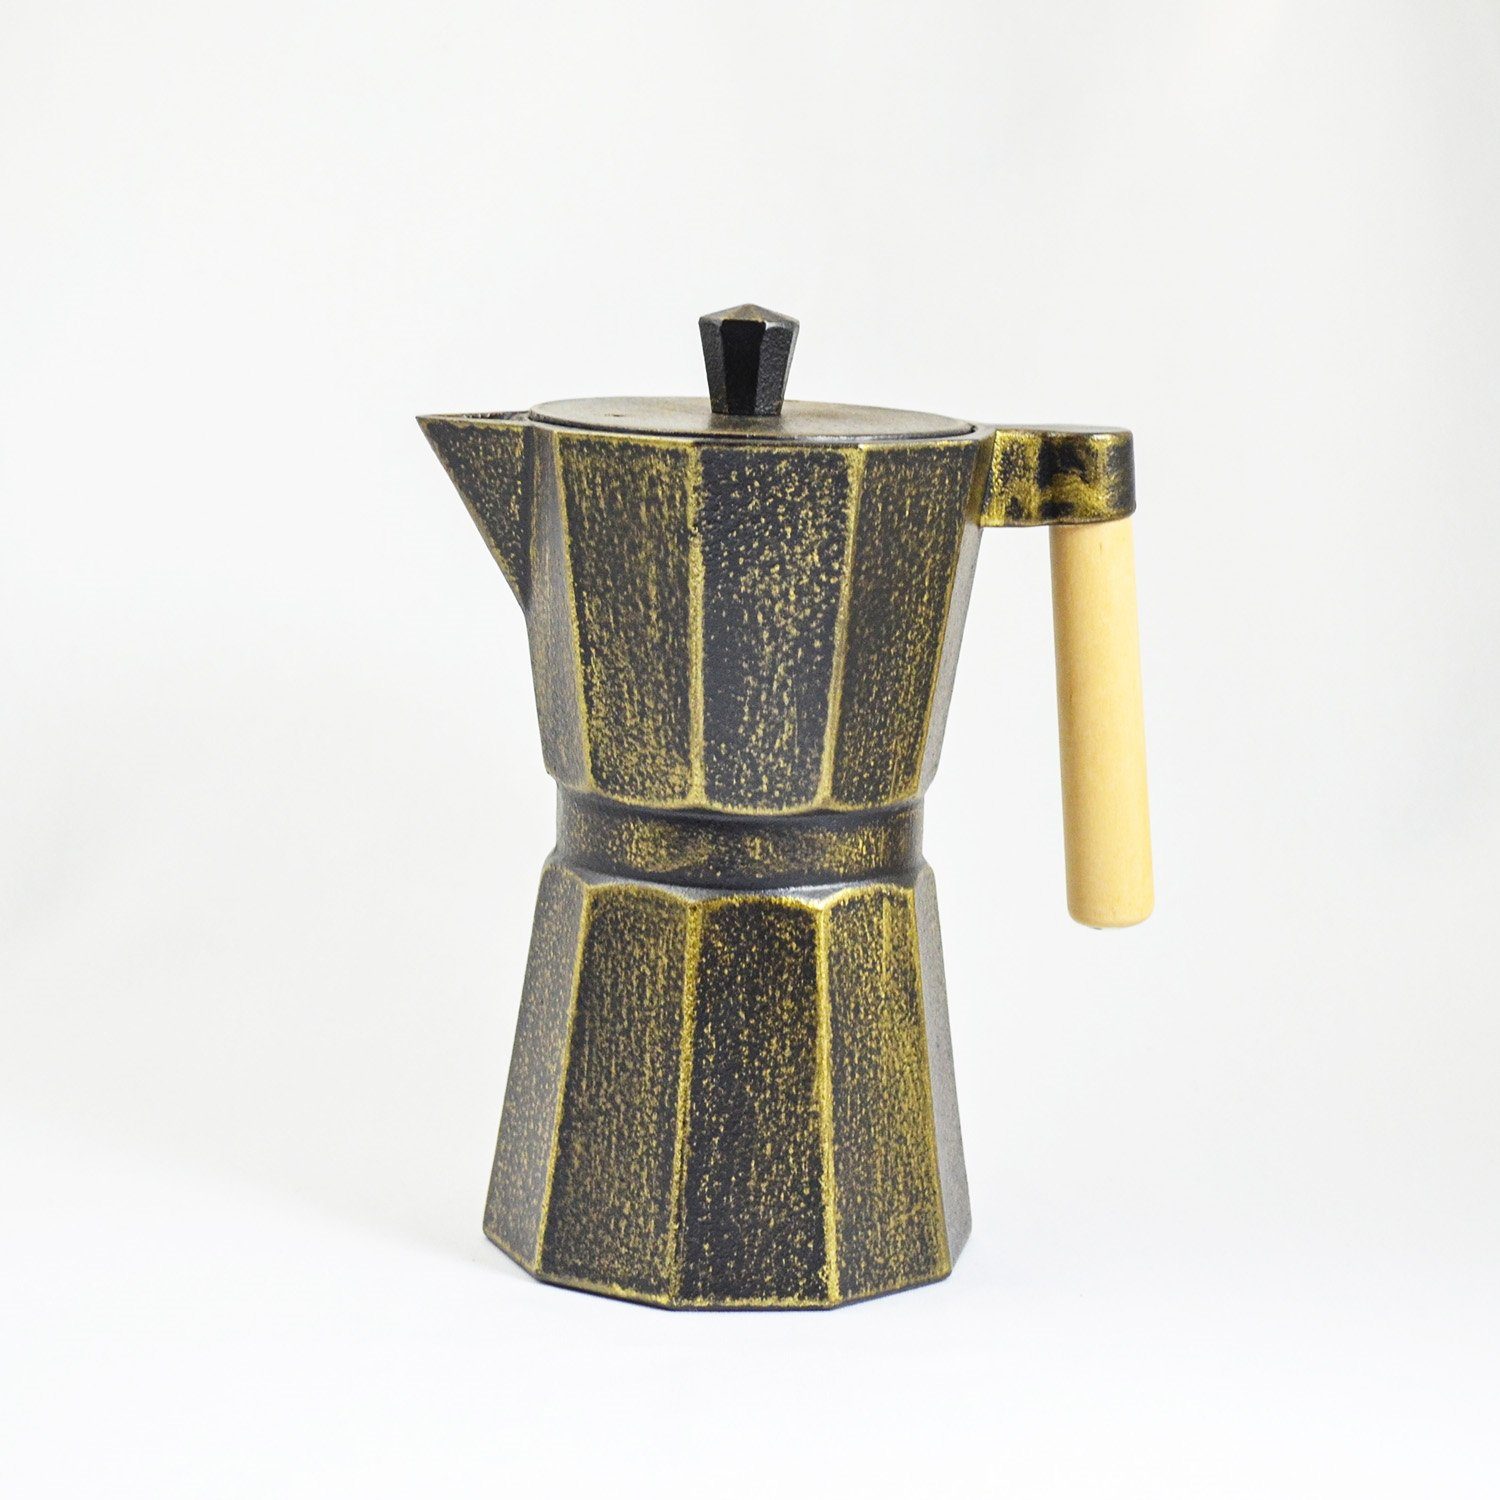 Gusseisen innen im emailliert aus Teekanne JA-UNENDLICH l, Sandgussverfahren, Kafei, 0.8 handgefertigt schwarzgold